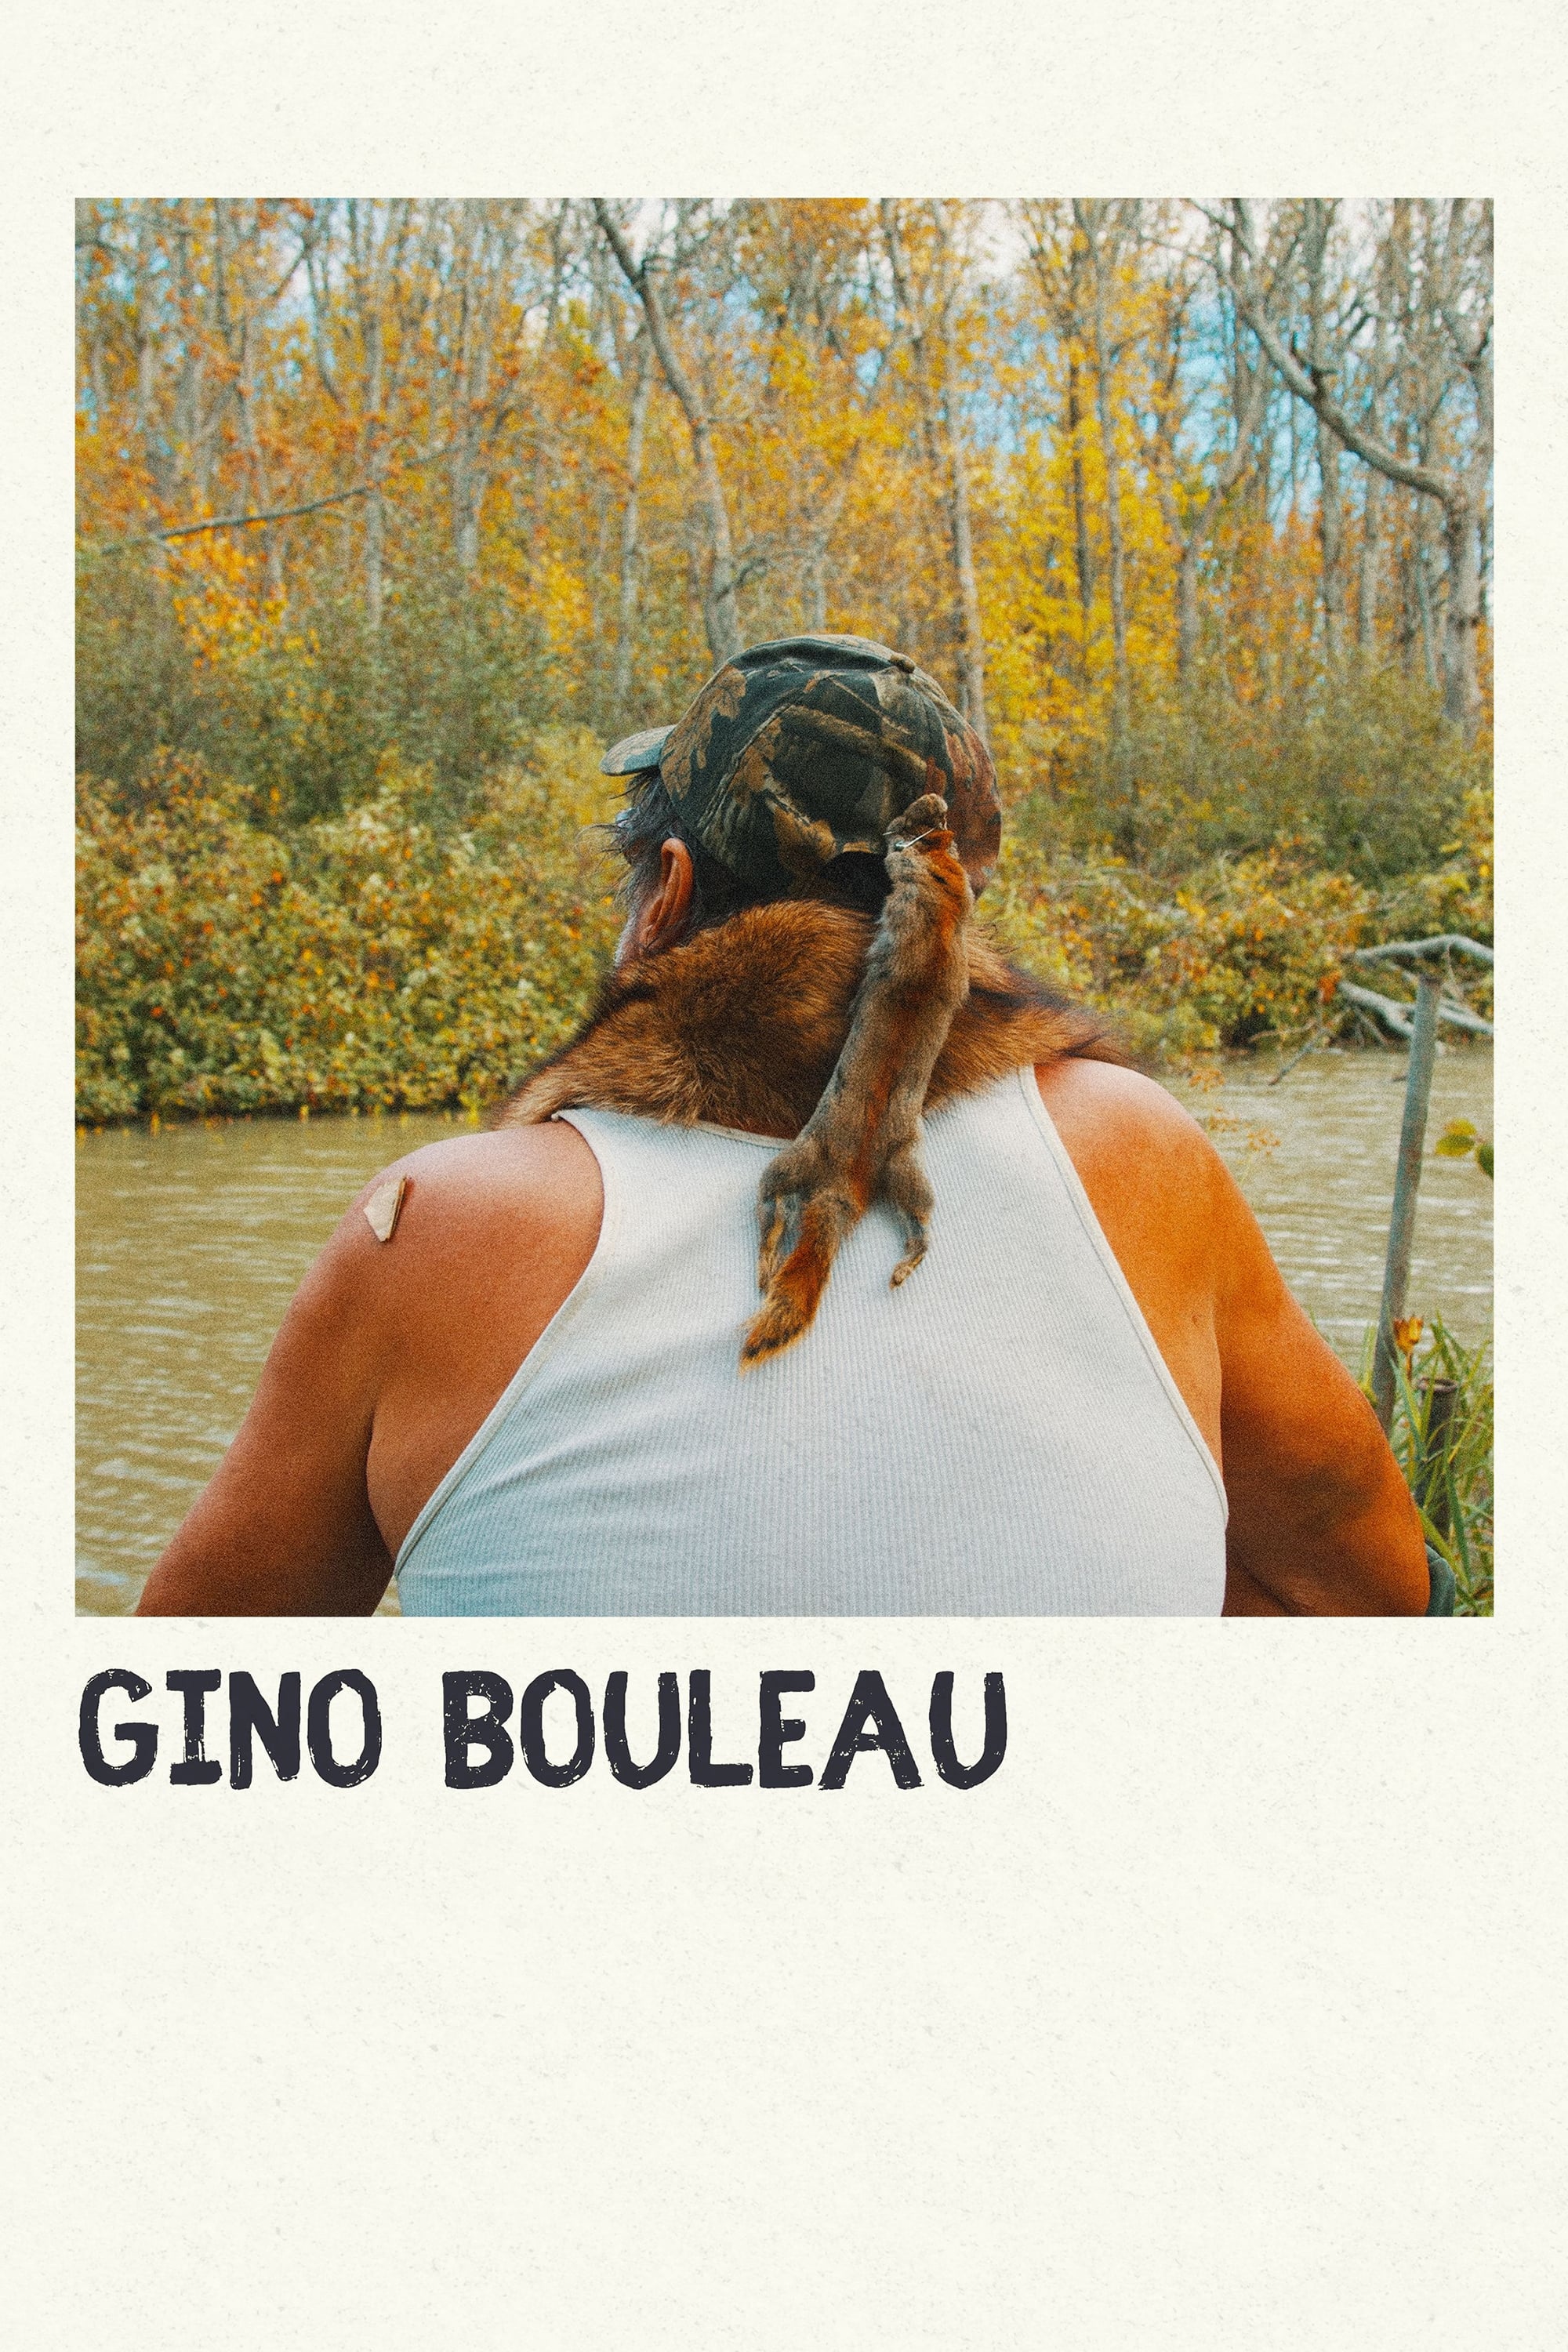 Gino Bouleau